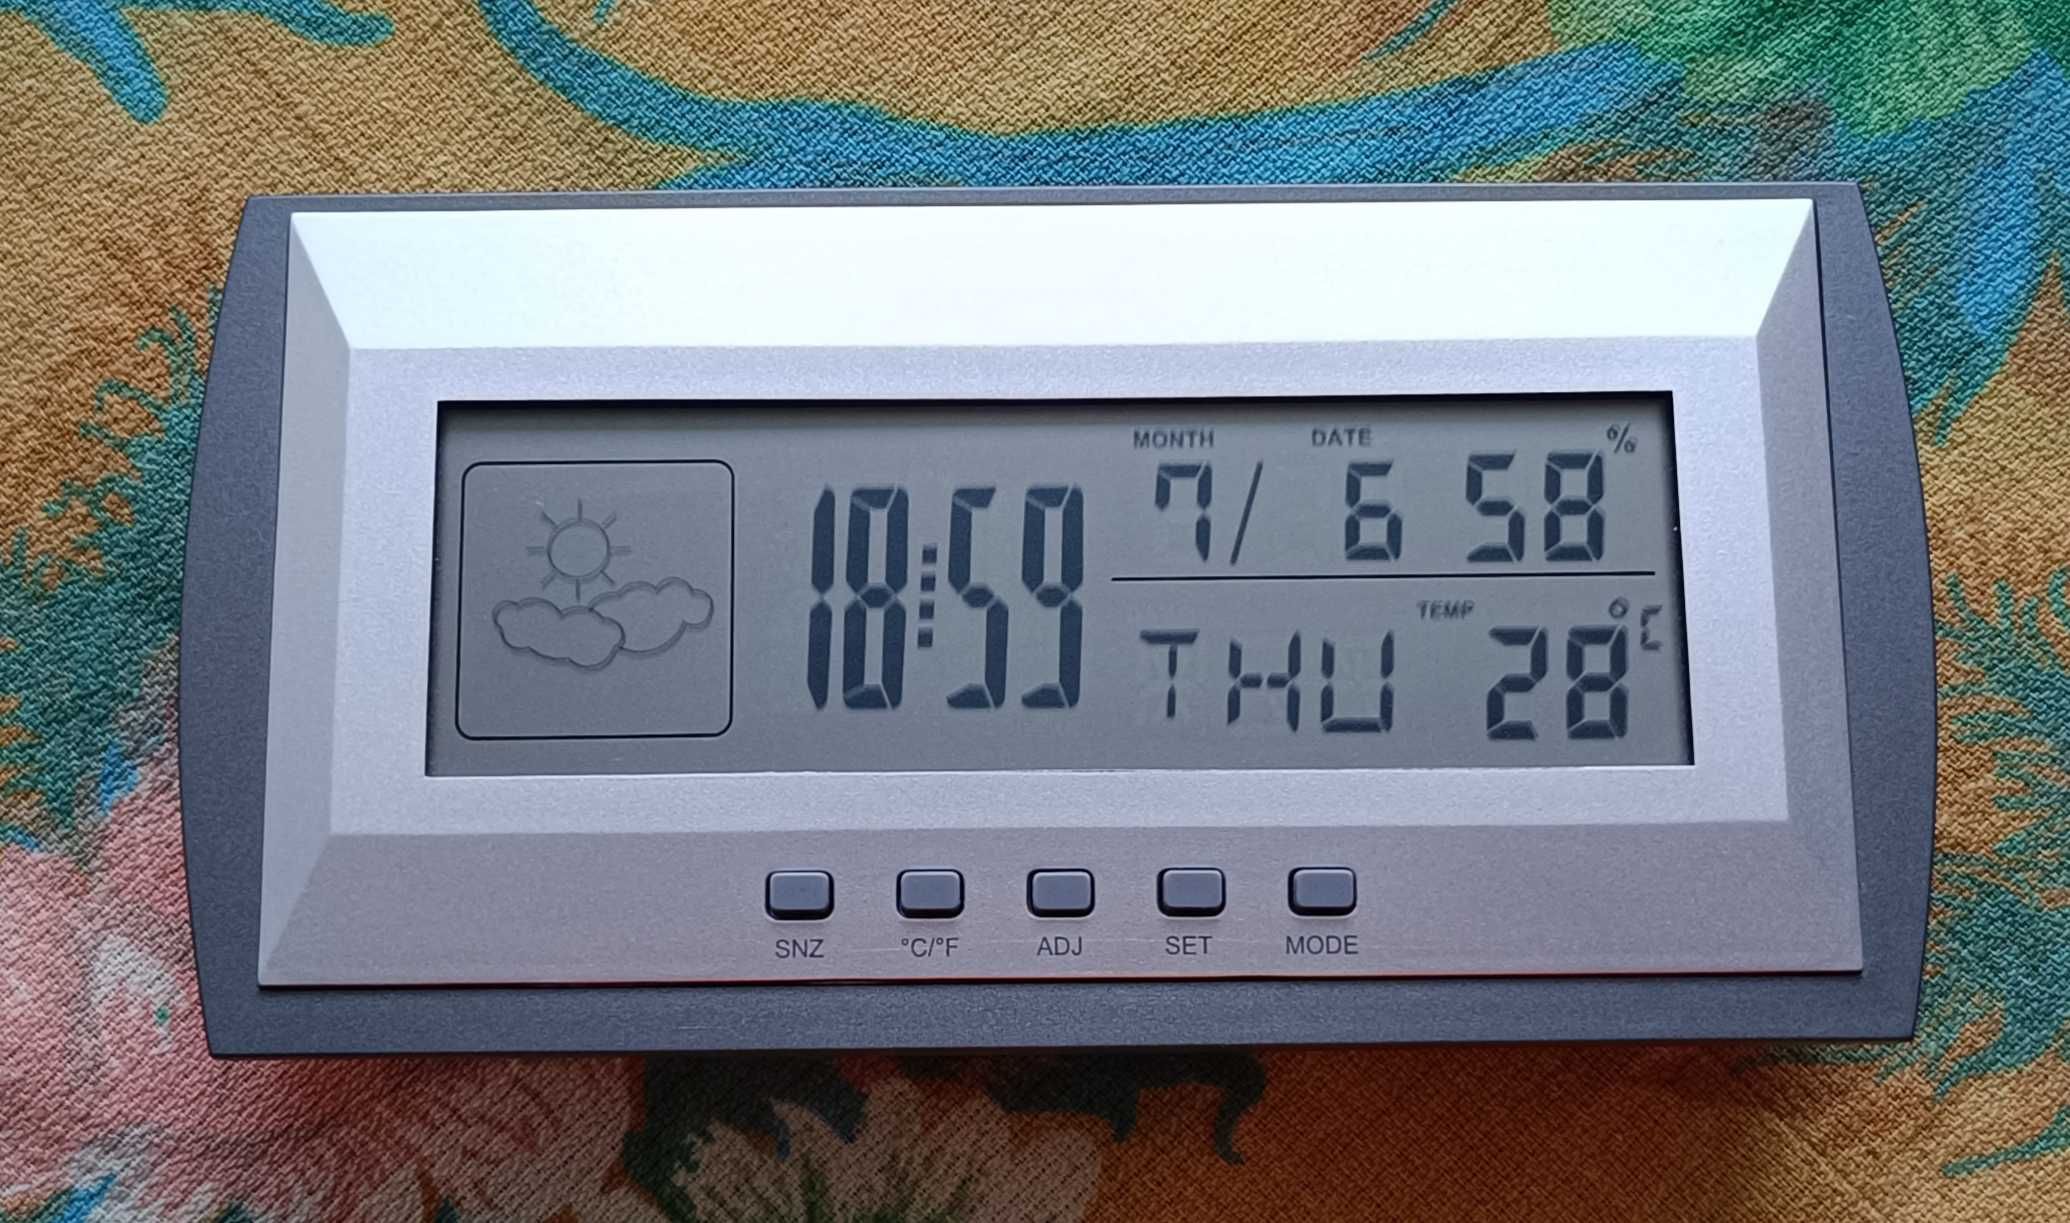 Стайна метеорологична станция с часовник - аларма и календар. Нова.